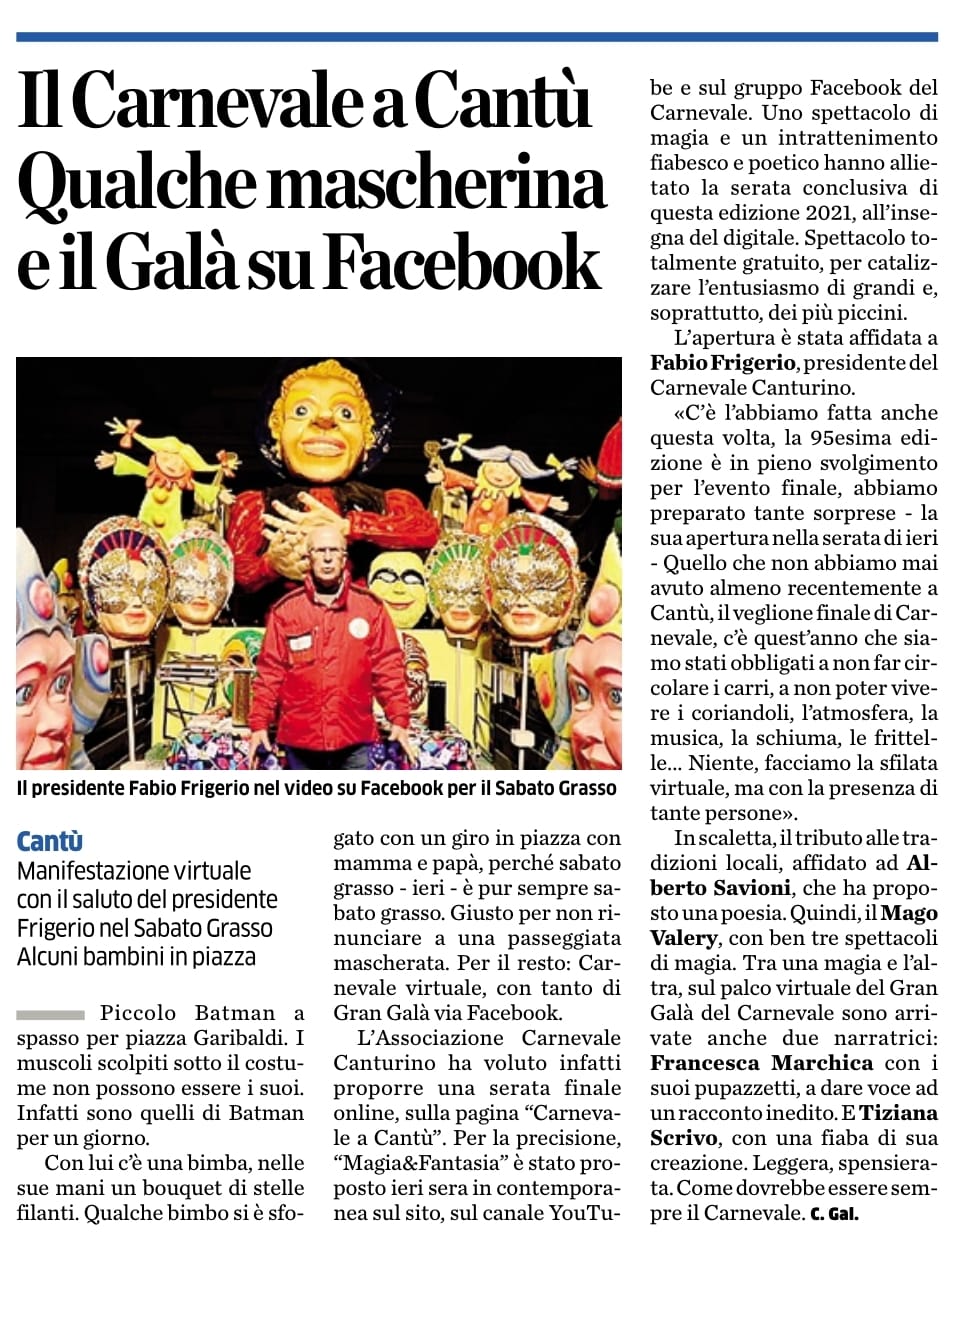 Il Carnevale a Cantù. Qualche mascherica a il Galà su Facebook.